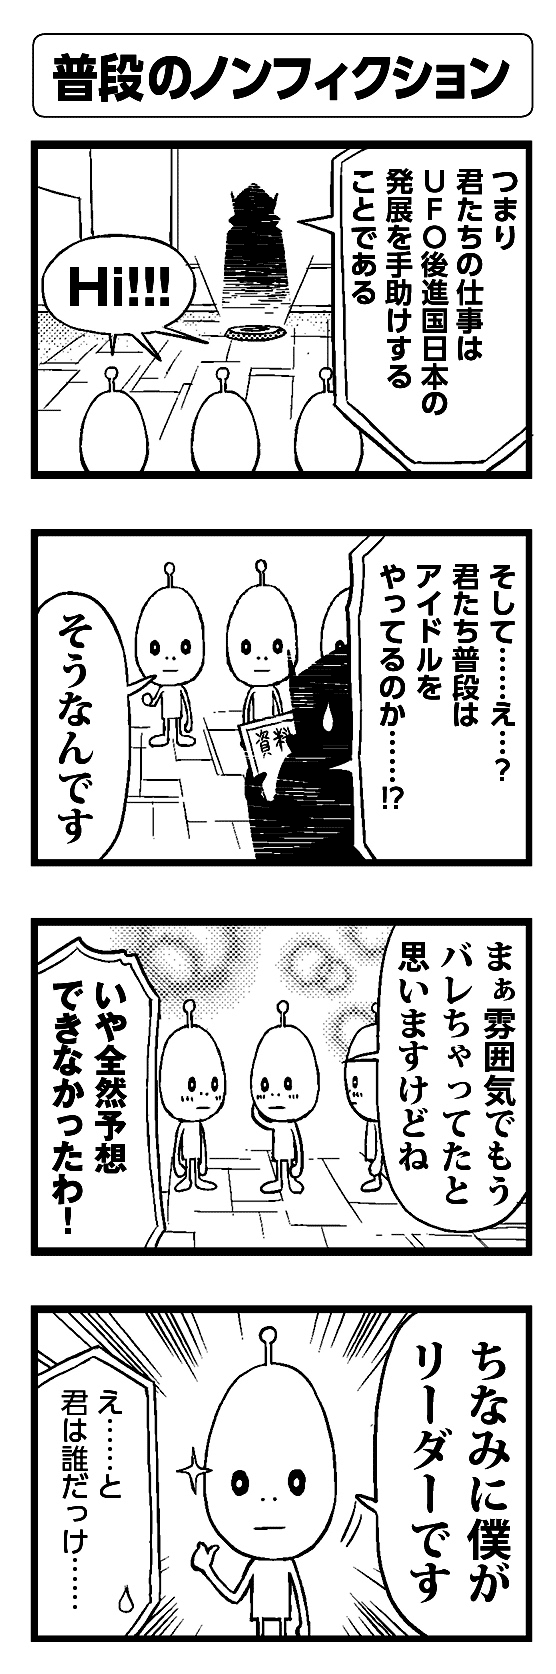 普段のノンフィクション - 四コマ漫画ノンフィクション #003